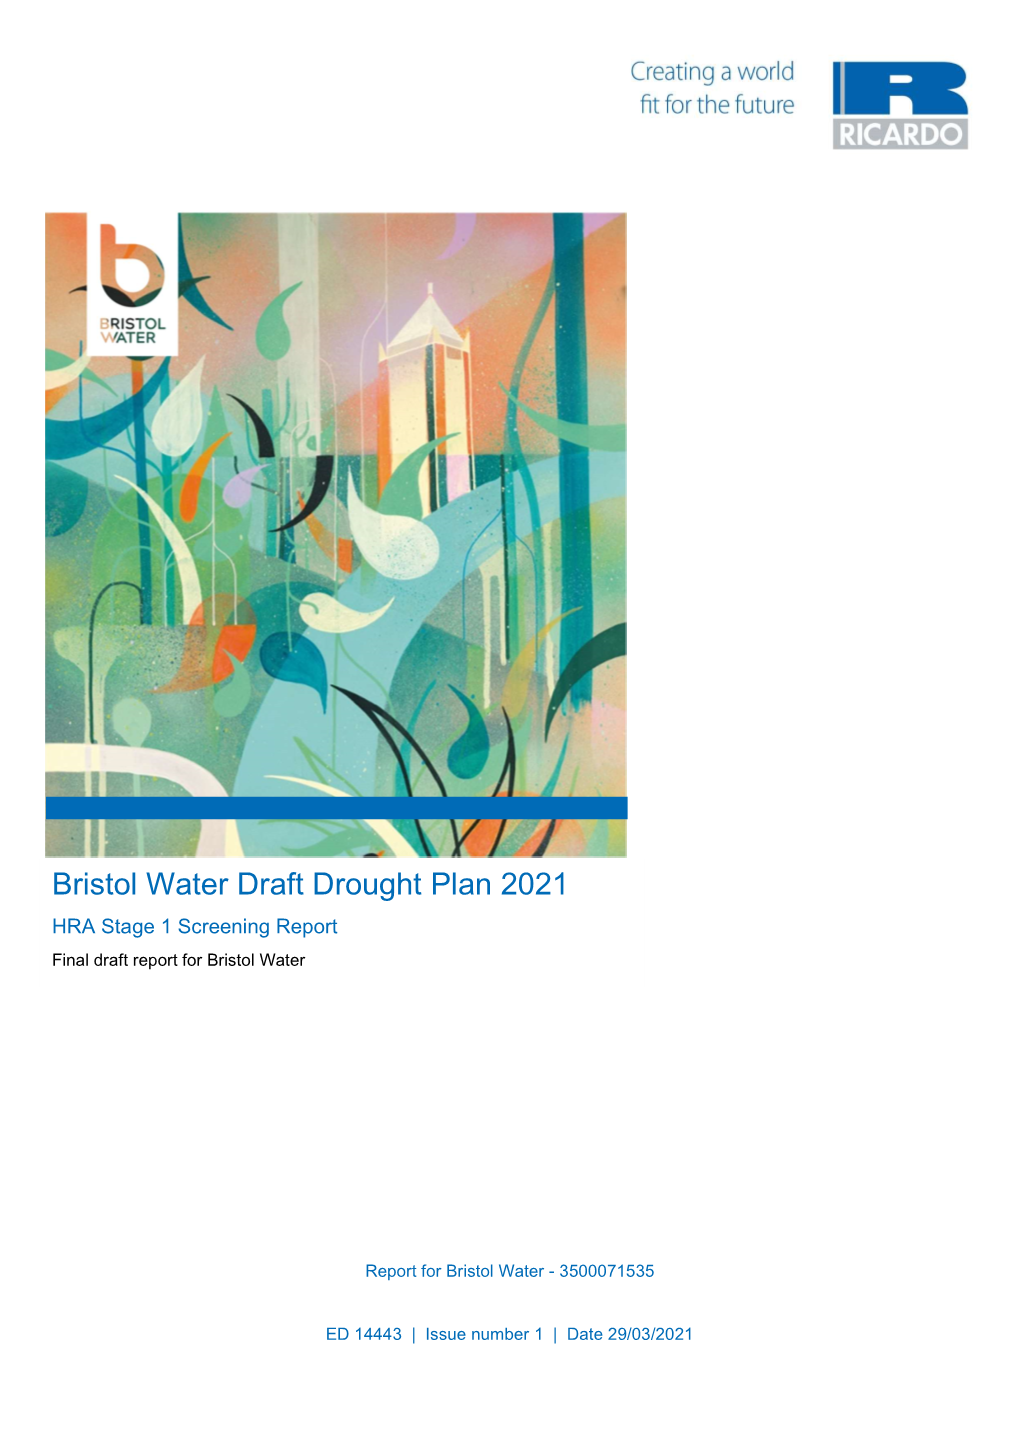 Bristol Water Draft Drought Plan 2021 HRA Stage 1 Screening Report Final Draft Report for Bristol Water